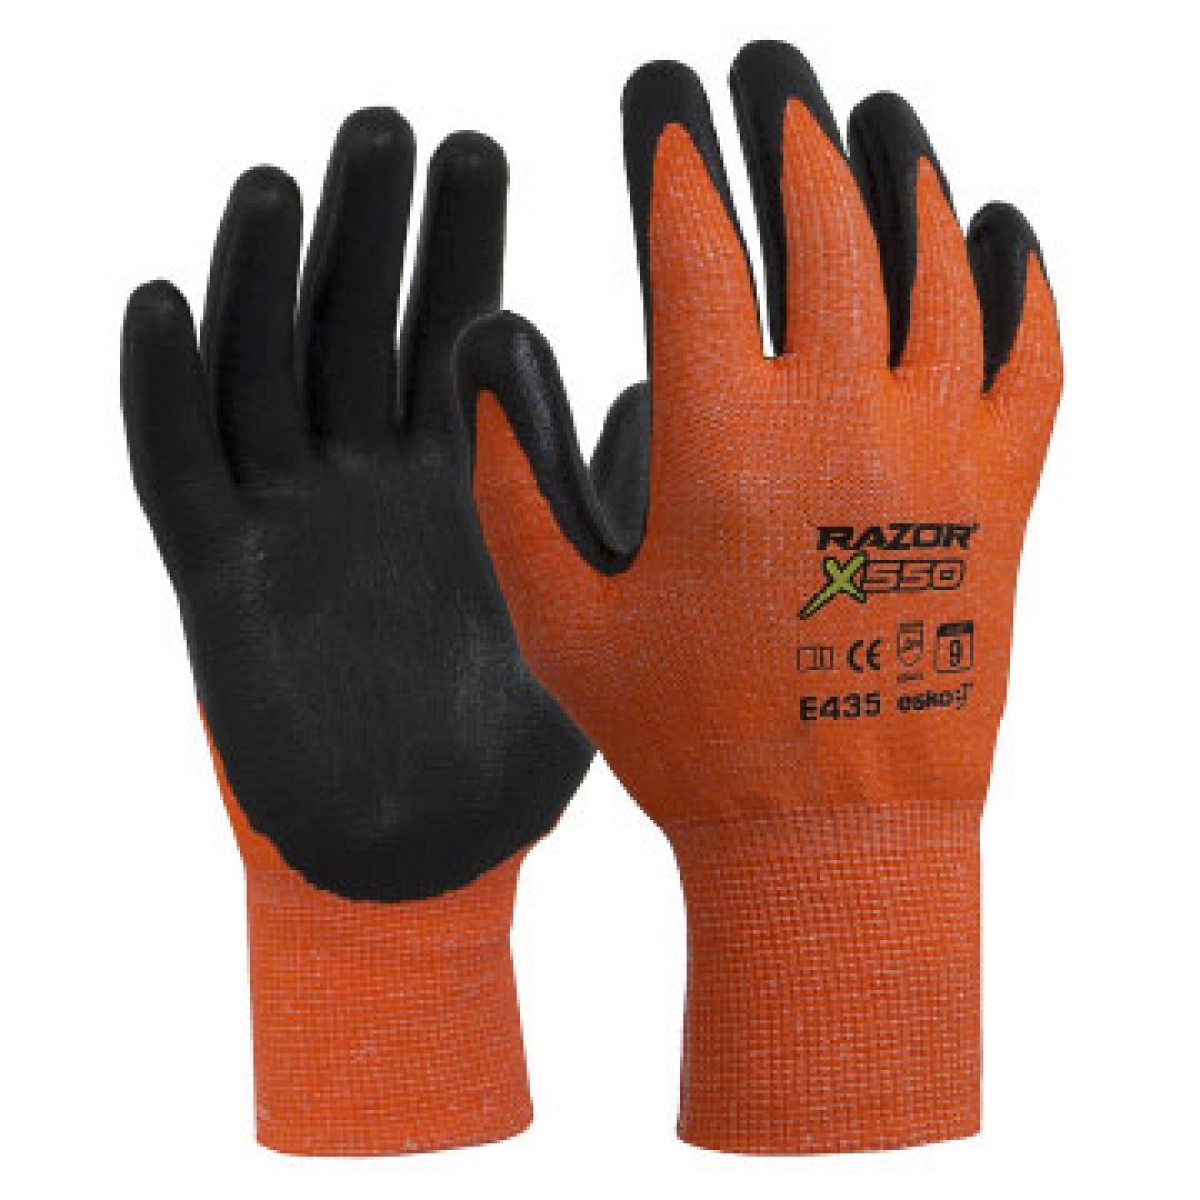 ESKO Razor X500 Cut 5 Safety Gloves